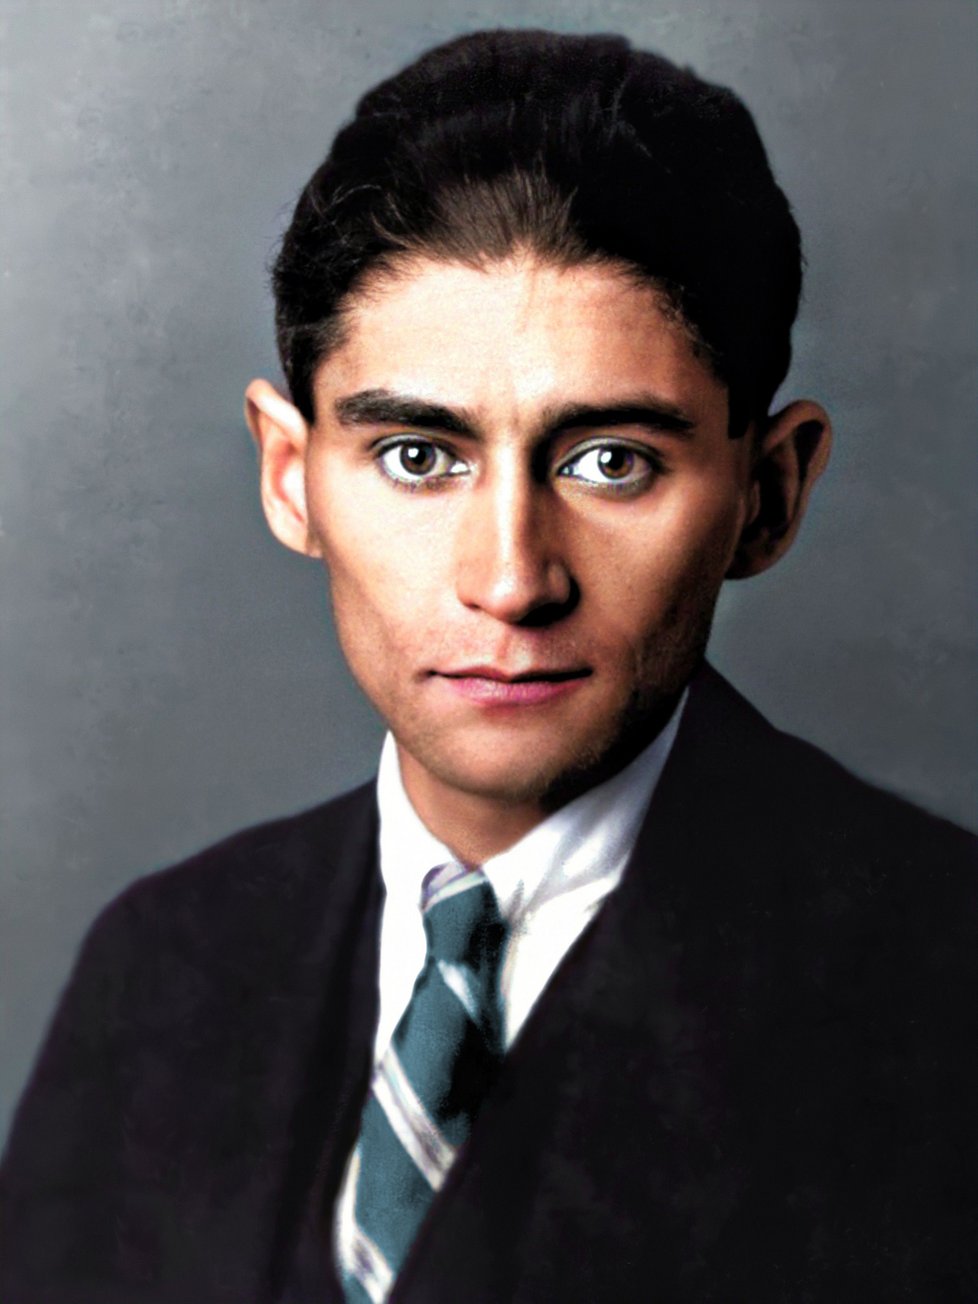 Franz Kafka; židovským jménem Anšel, byl pražský německy píšící spisovatel. Je považován za jednoho z literárně nejvlivnějších spisovatelů 20. století, byl členem Pražského kruhu. Napsal tři romány – Amerika, Proces a Zámek – a řadu povídek a novel.